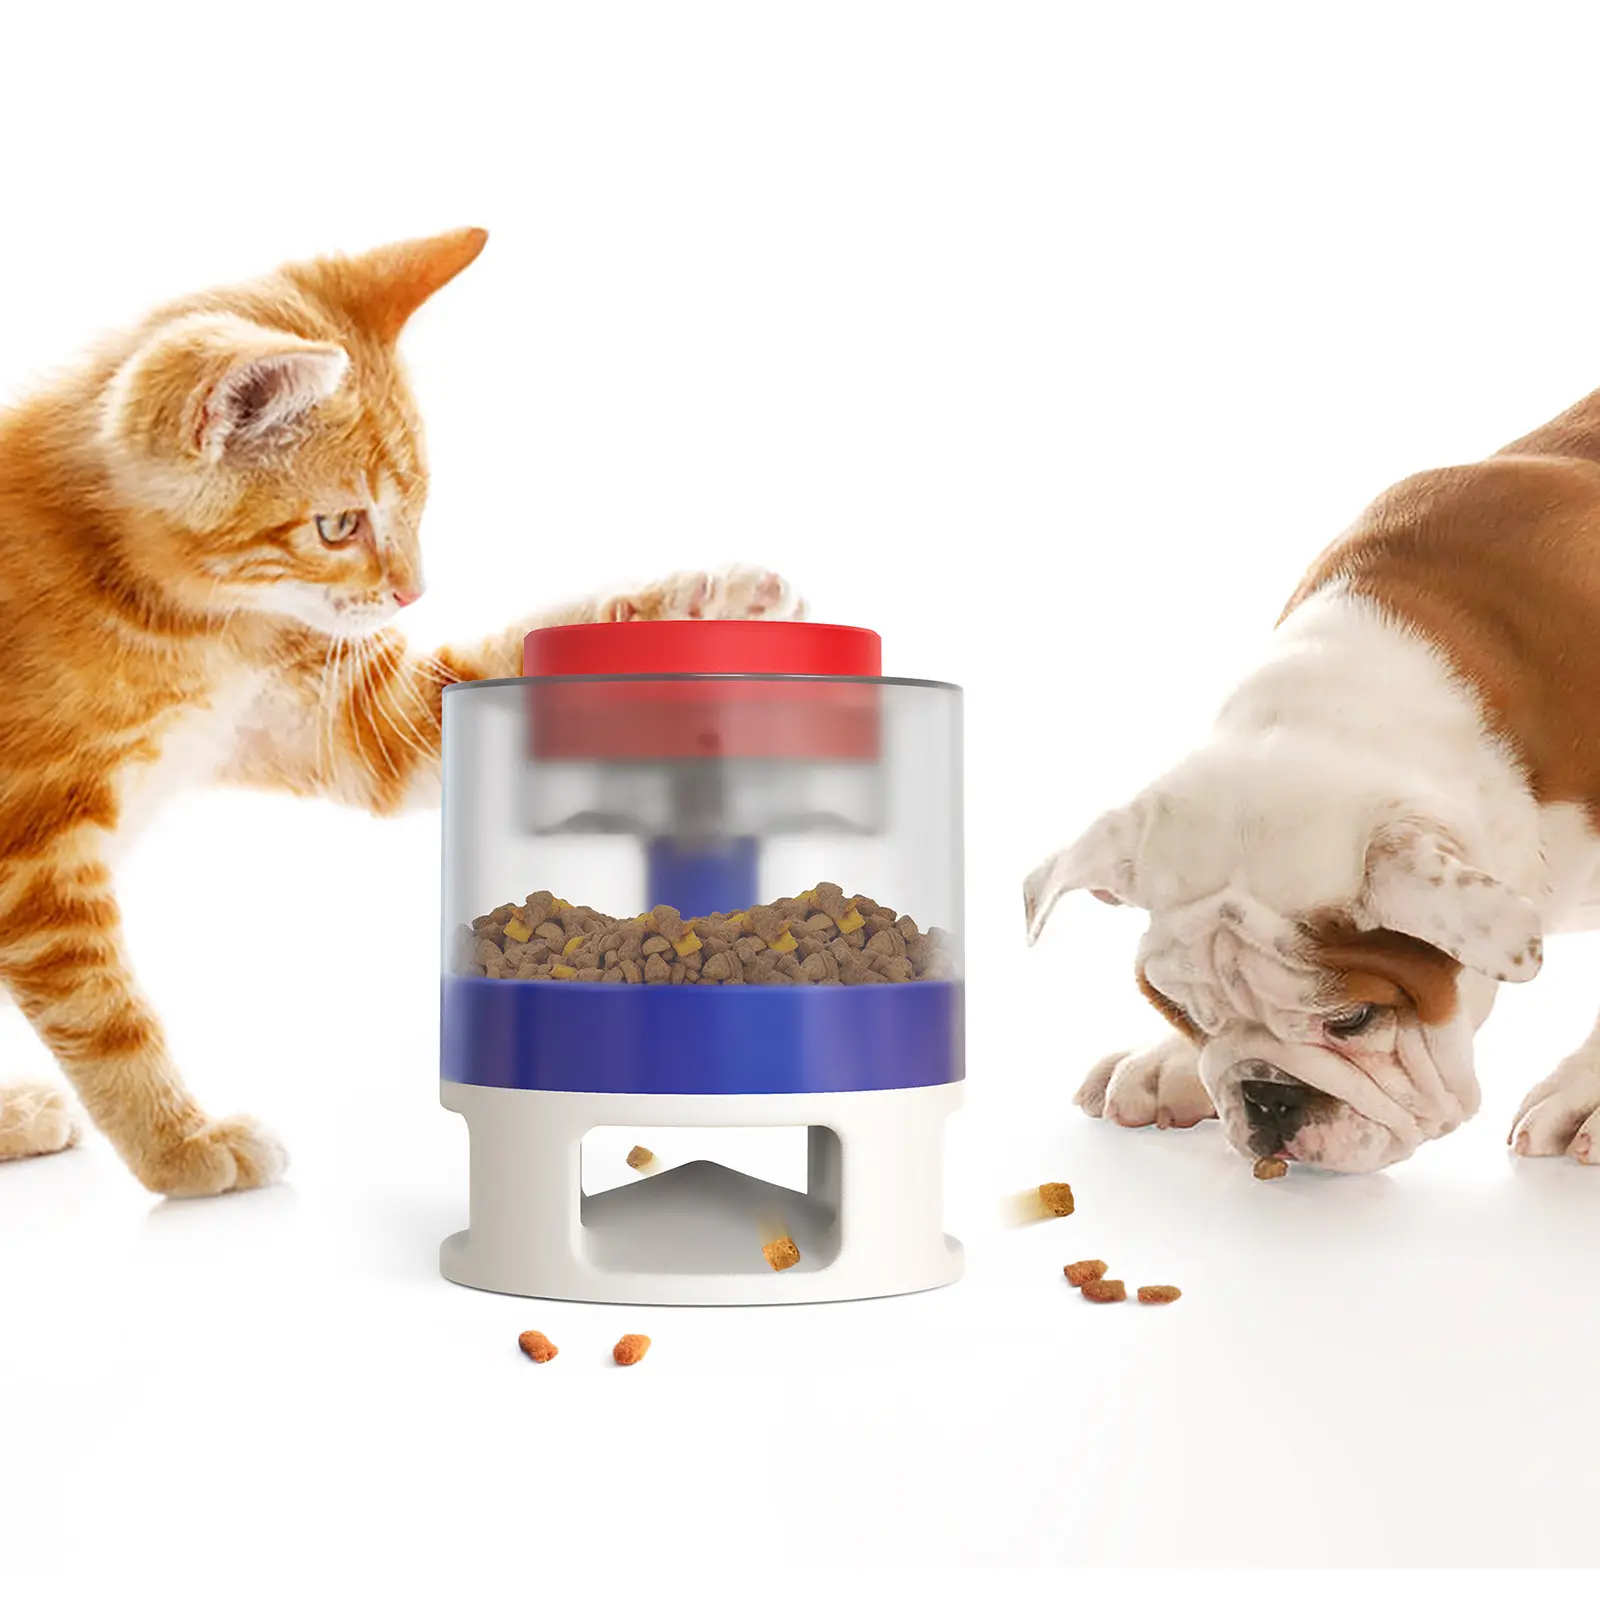 لعبة لغز التغذية عن طريق الضغط لتخزين الطعام بشكل تفاعلي صندوق لتخزين الطعام الحيوانات الأليفة الكلاب